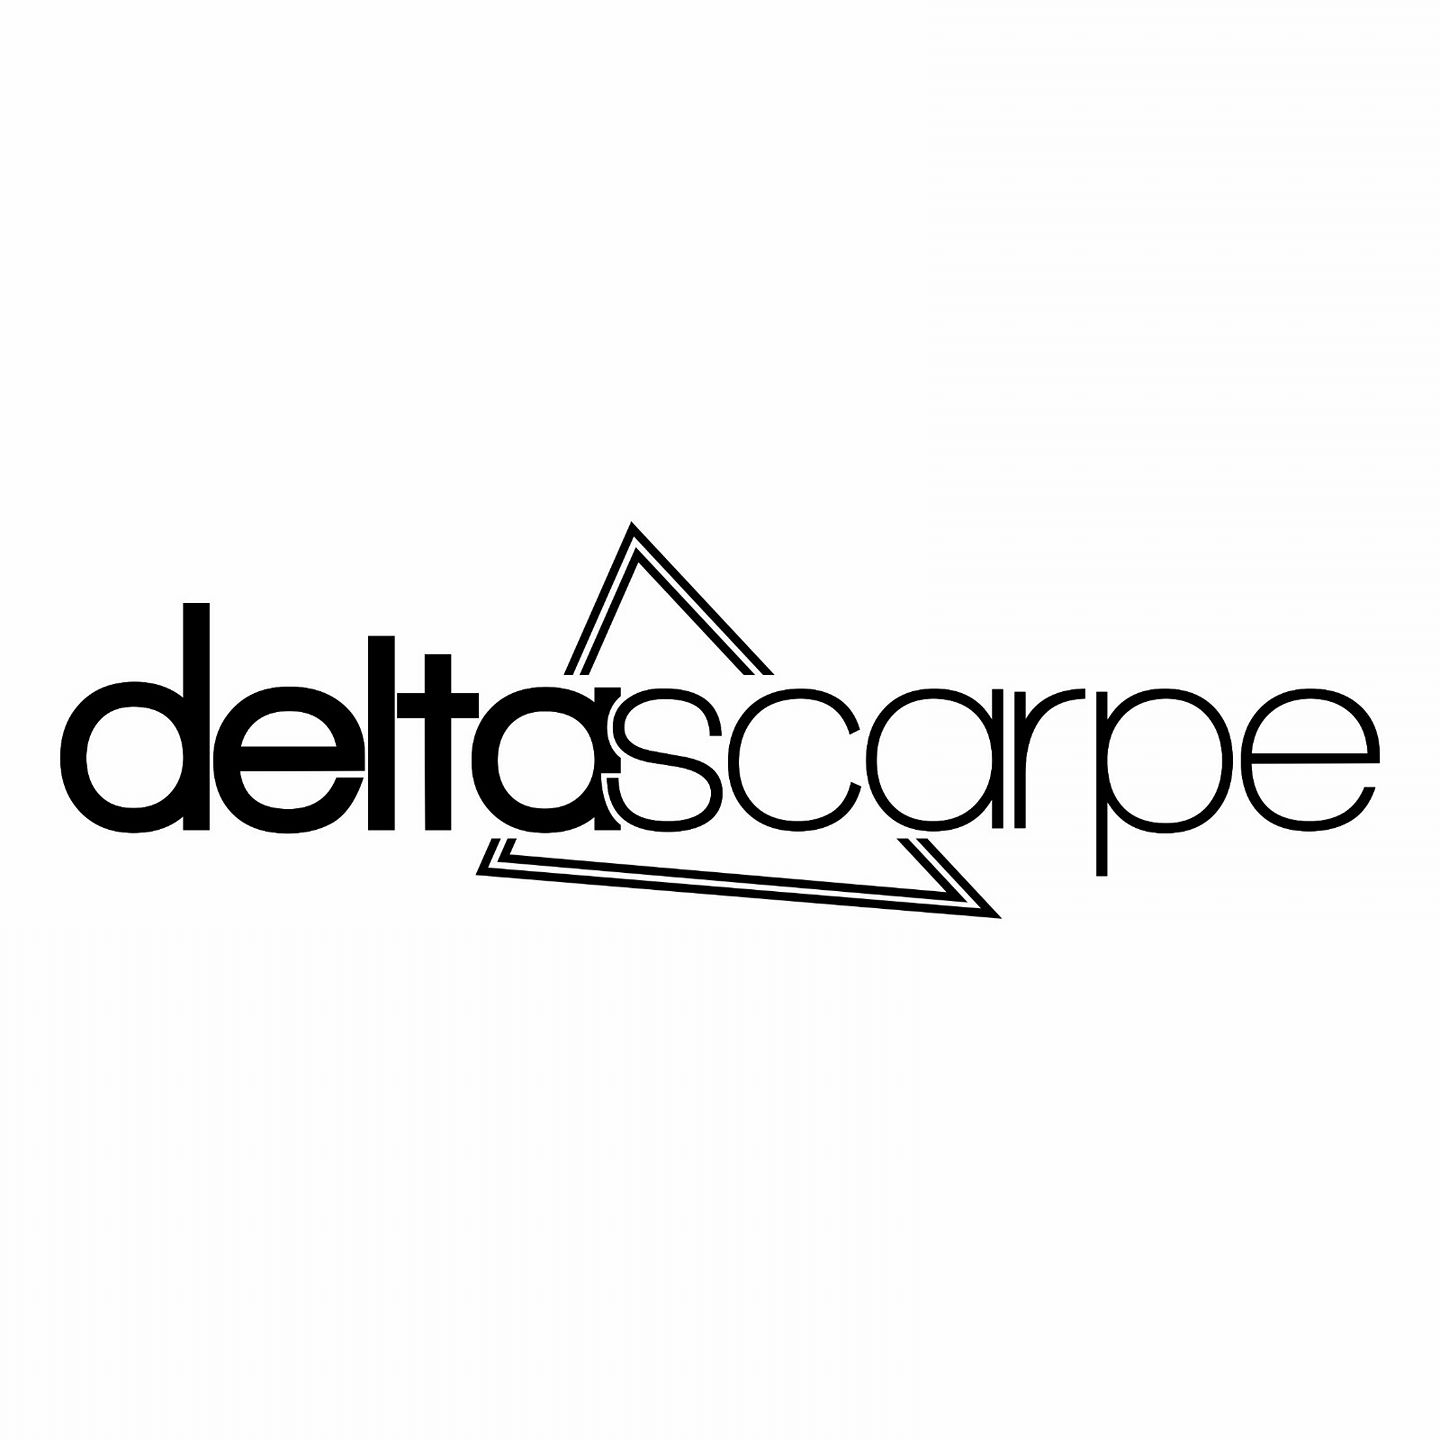 Delta Scarpe